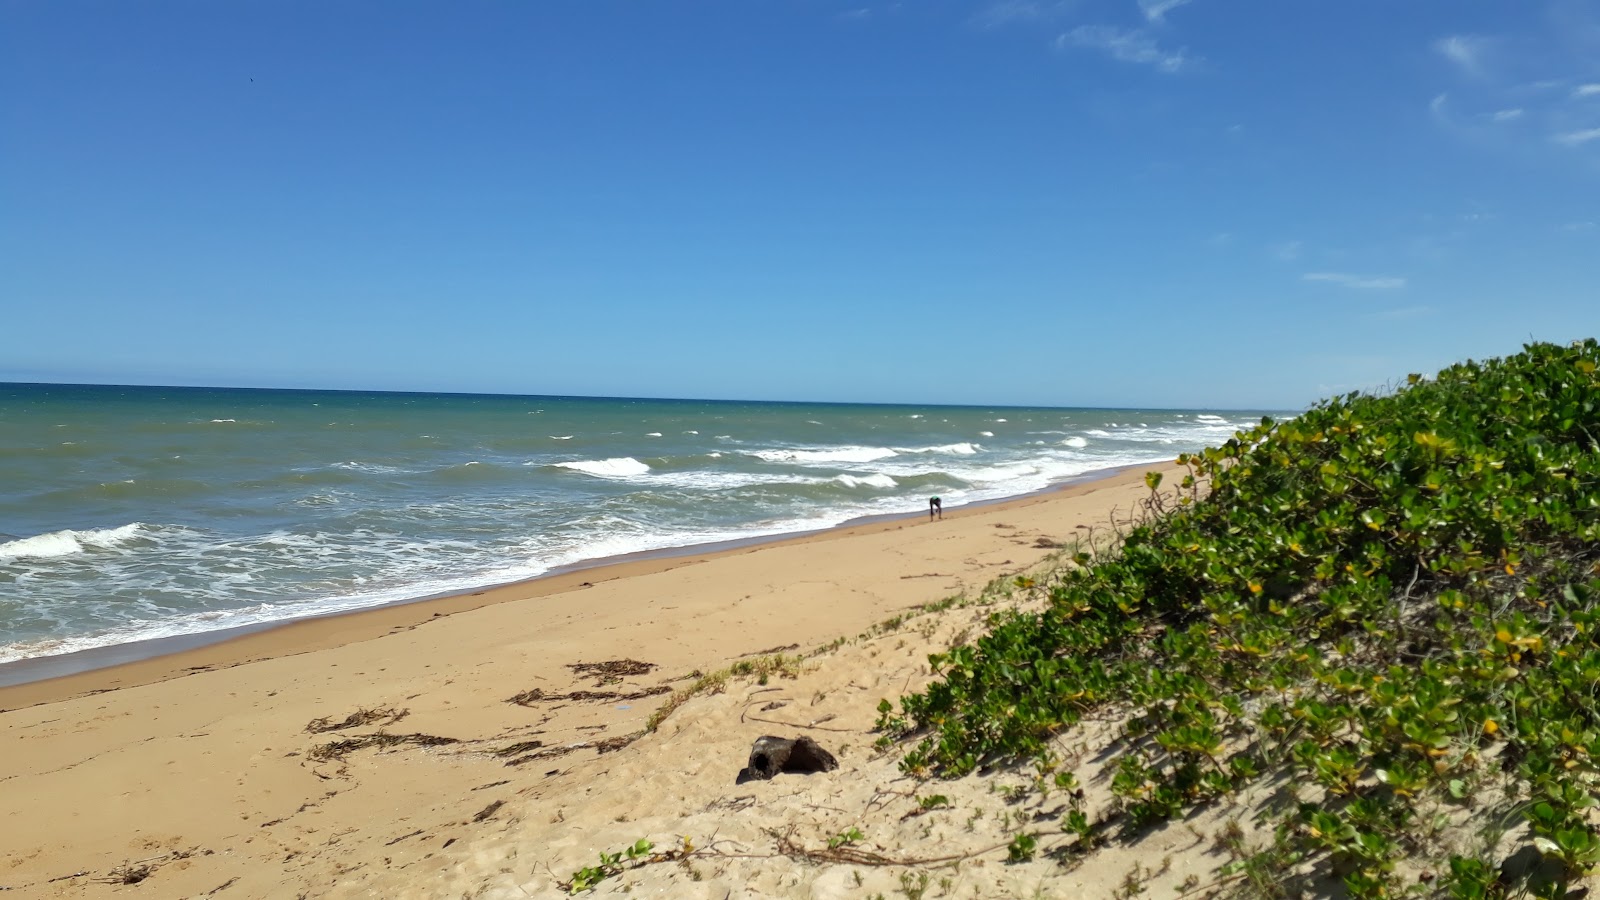 伊塔乌纳斯海滩的照片 带有碧绿色纯水表面